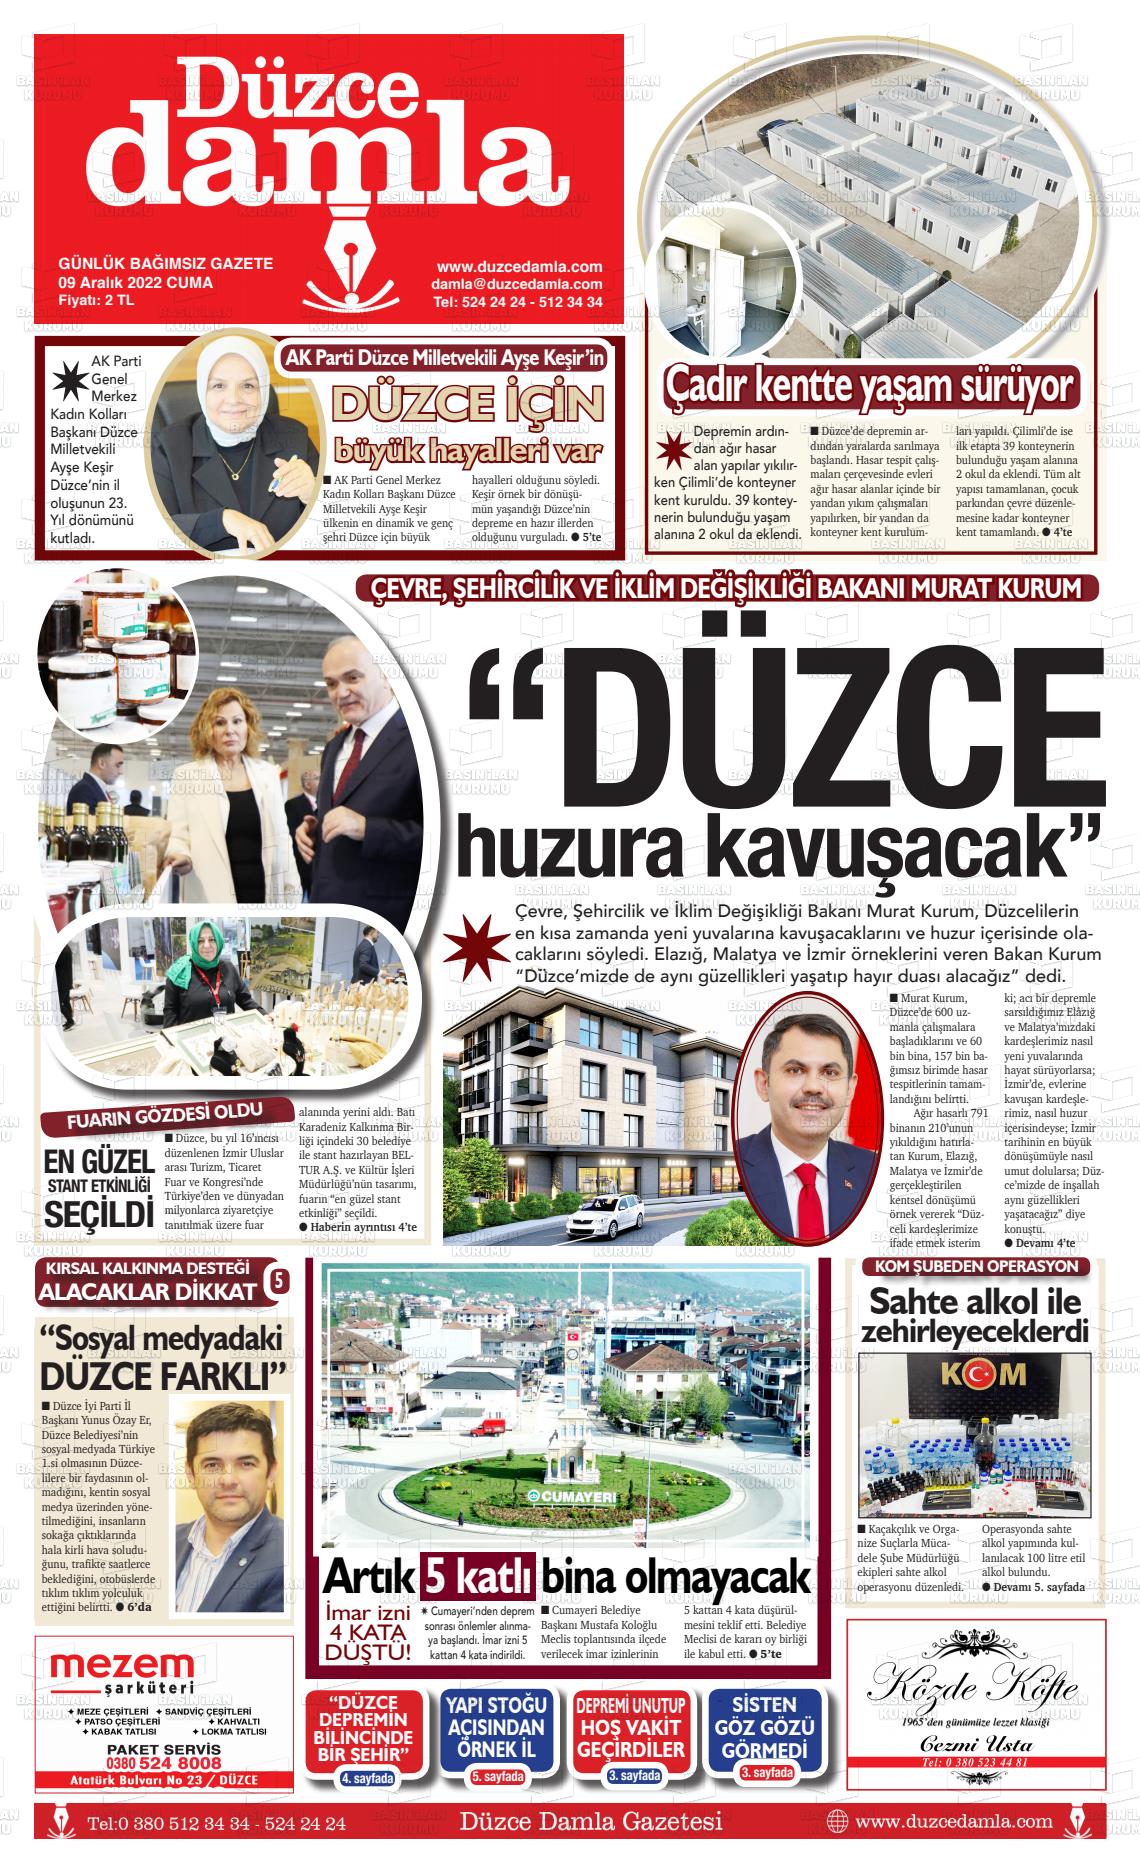 09 Aralık 2022 Düzce Damla Gazete Manşeti